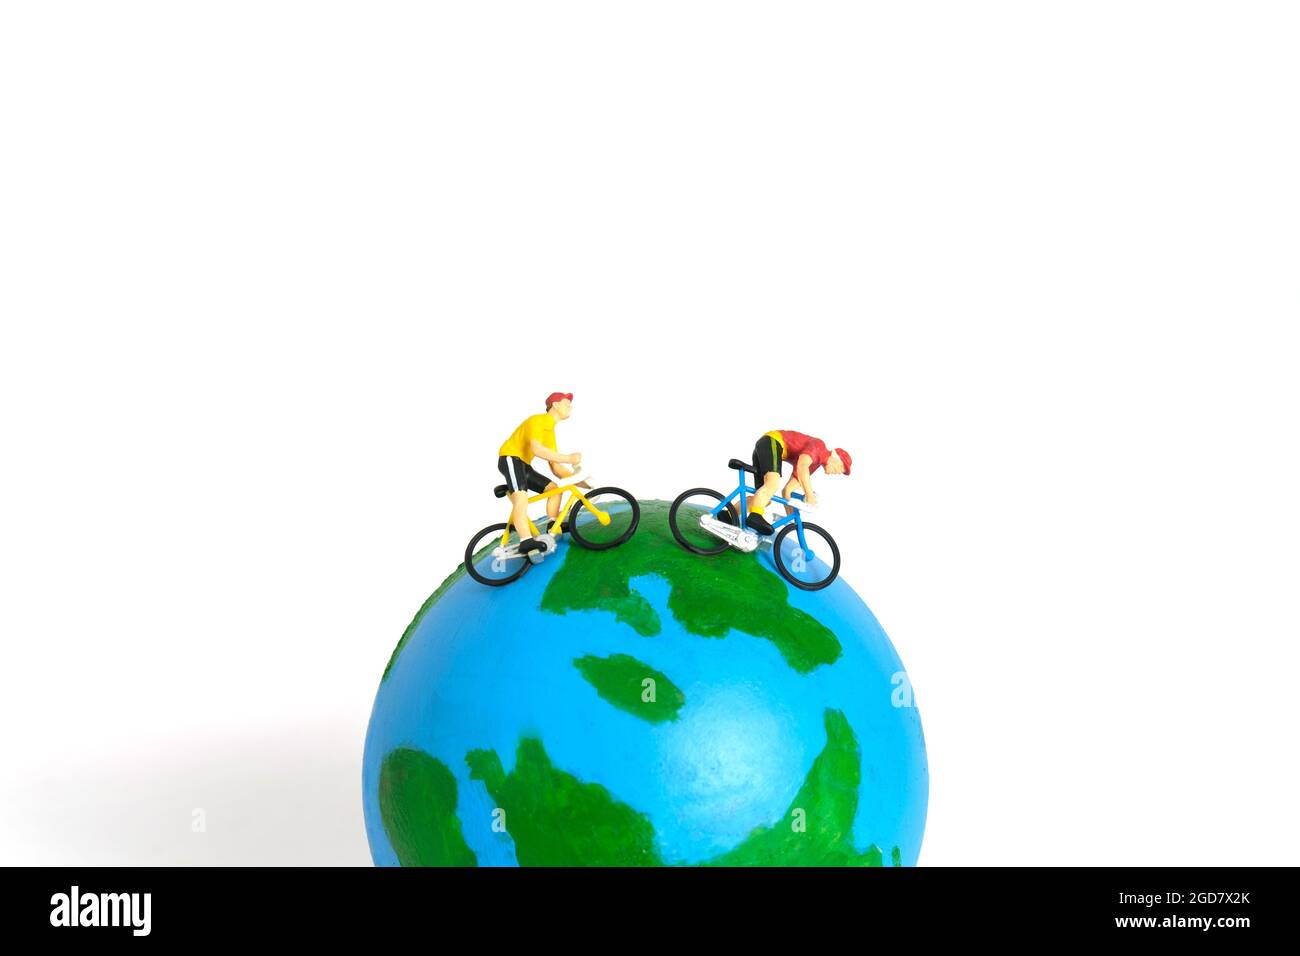 Miniatur Menschen Spielzeug Figur Fotografie. Weltfahrradtag oder Weltrundfahrt Konzept. Ein Biker, der über dem Erdball radelt, isoliert auf weißem Rücken Stockfoto